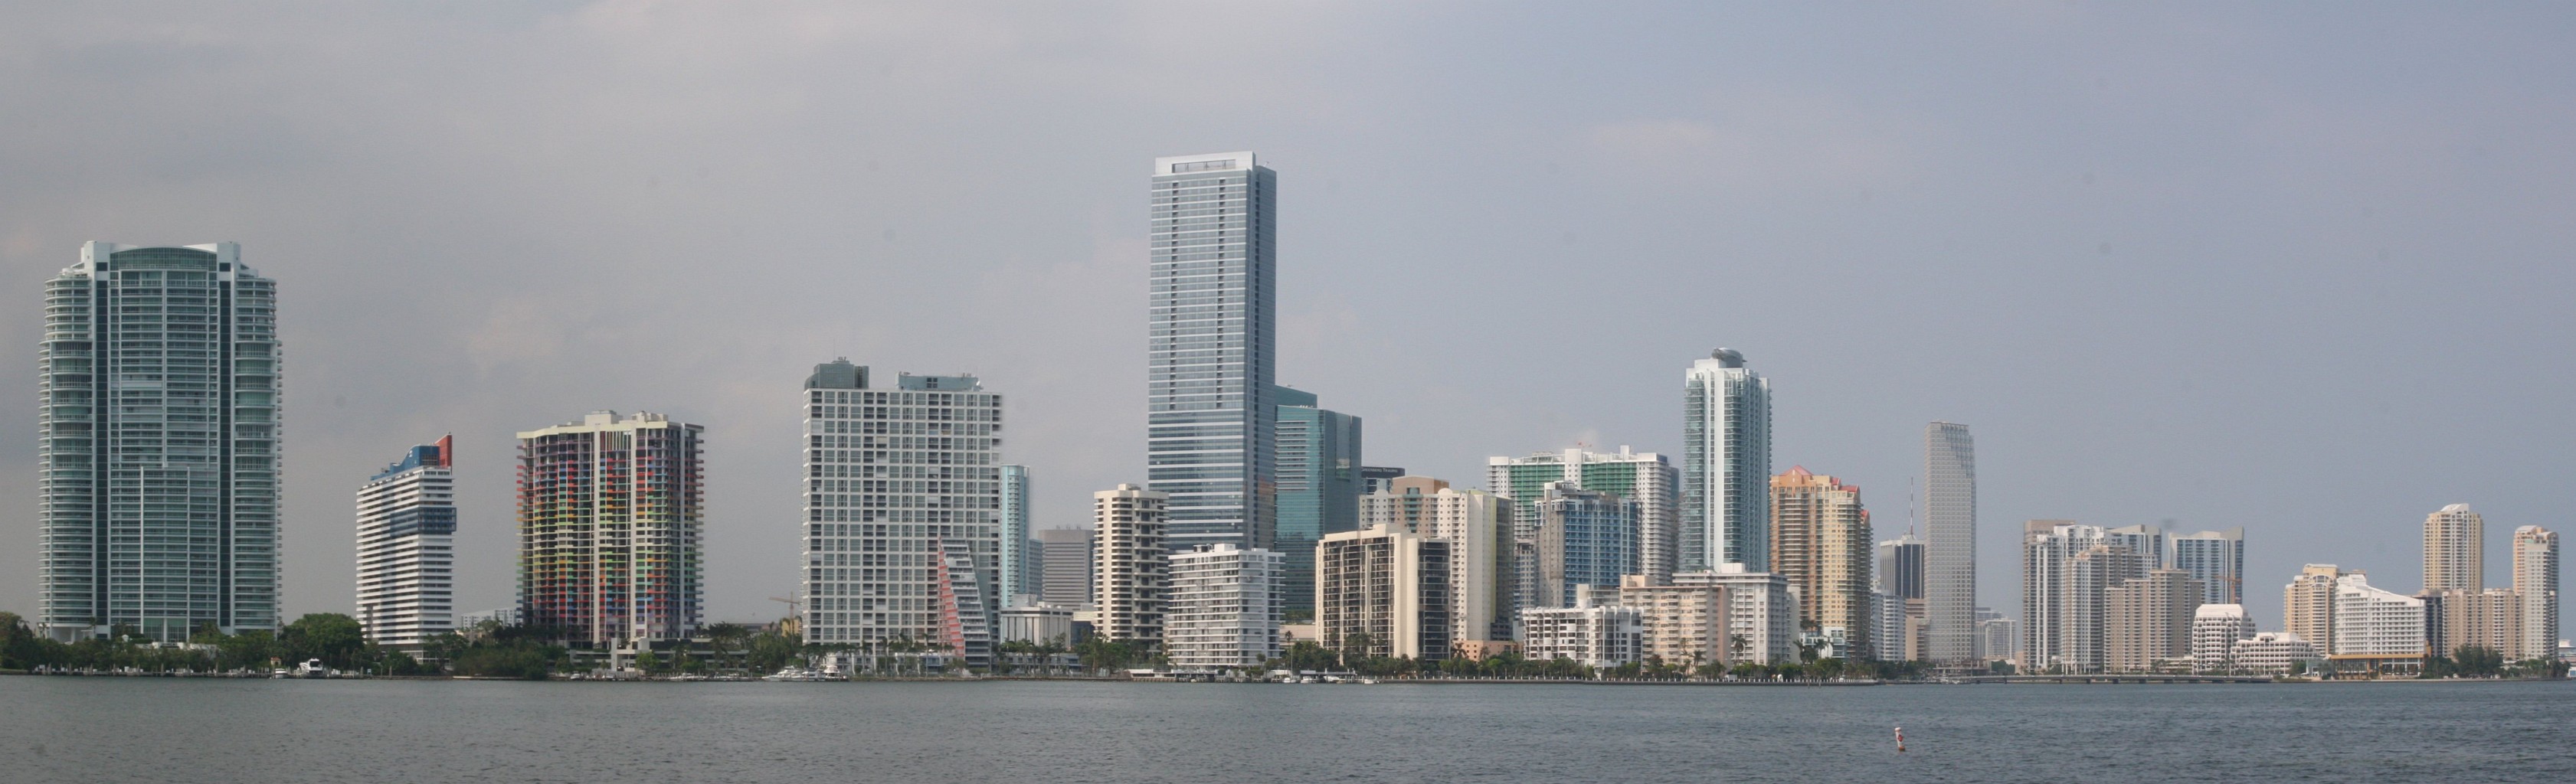 Miami1.JPG